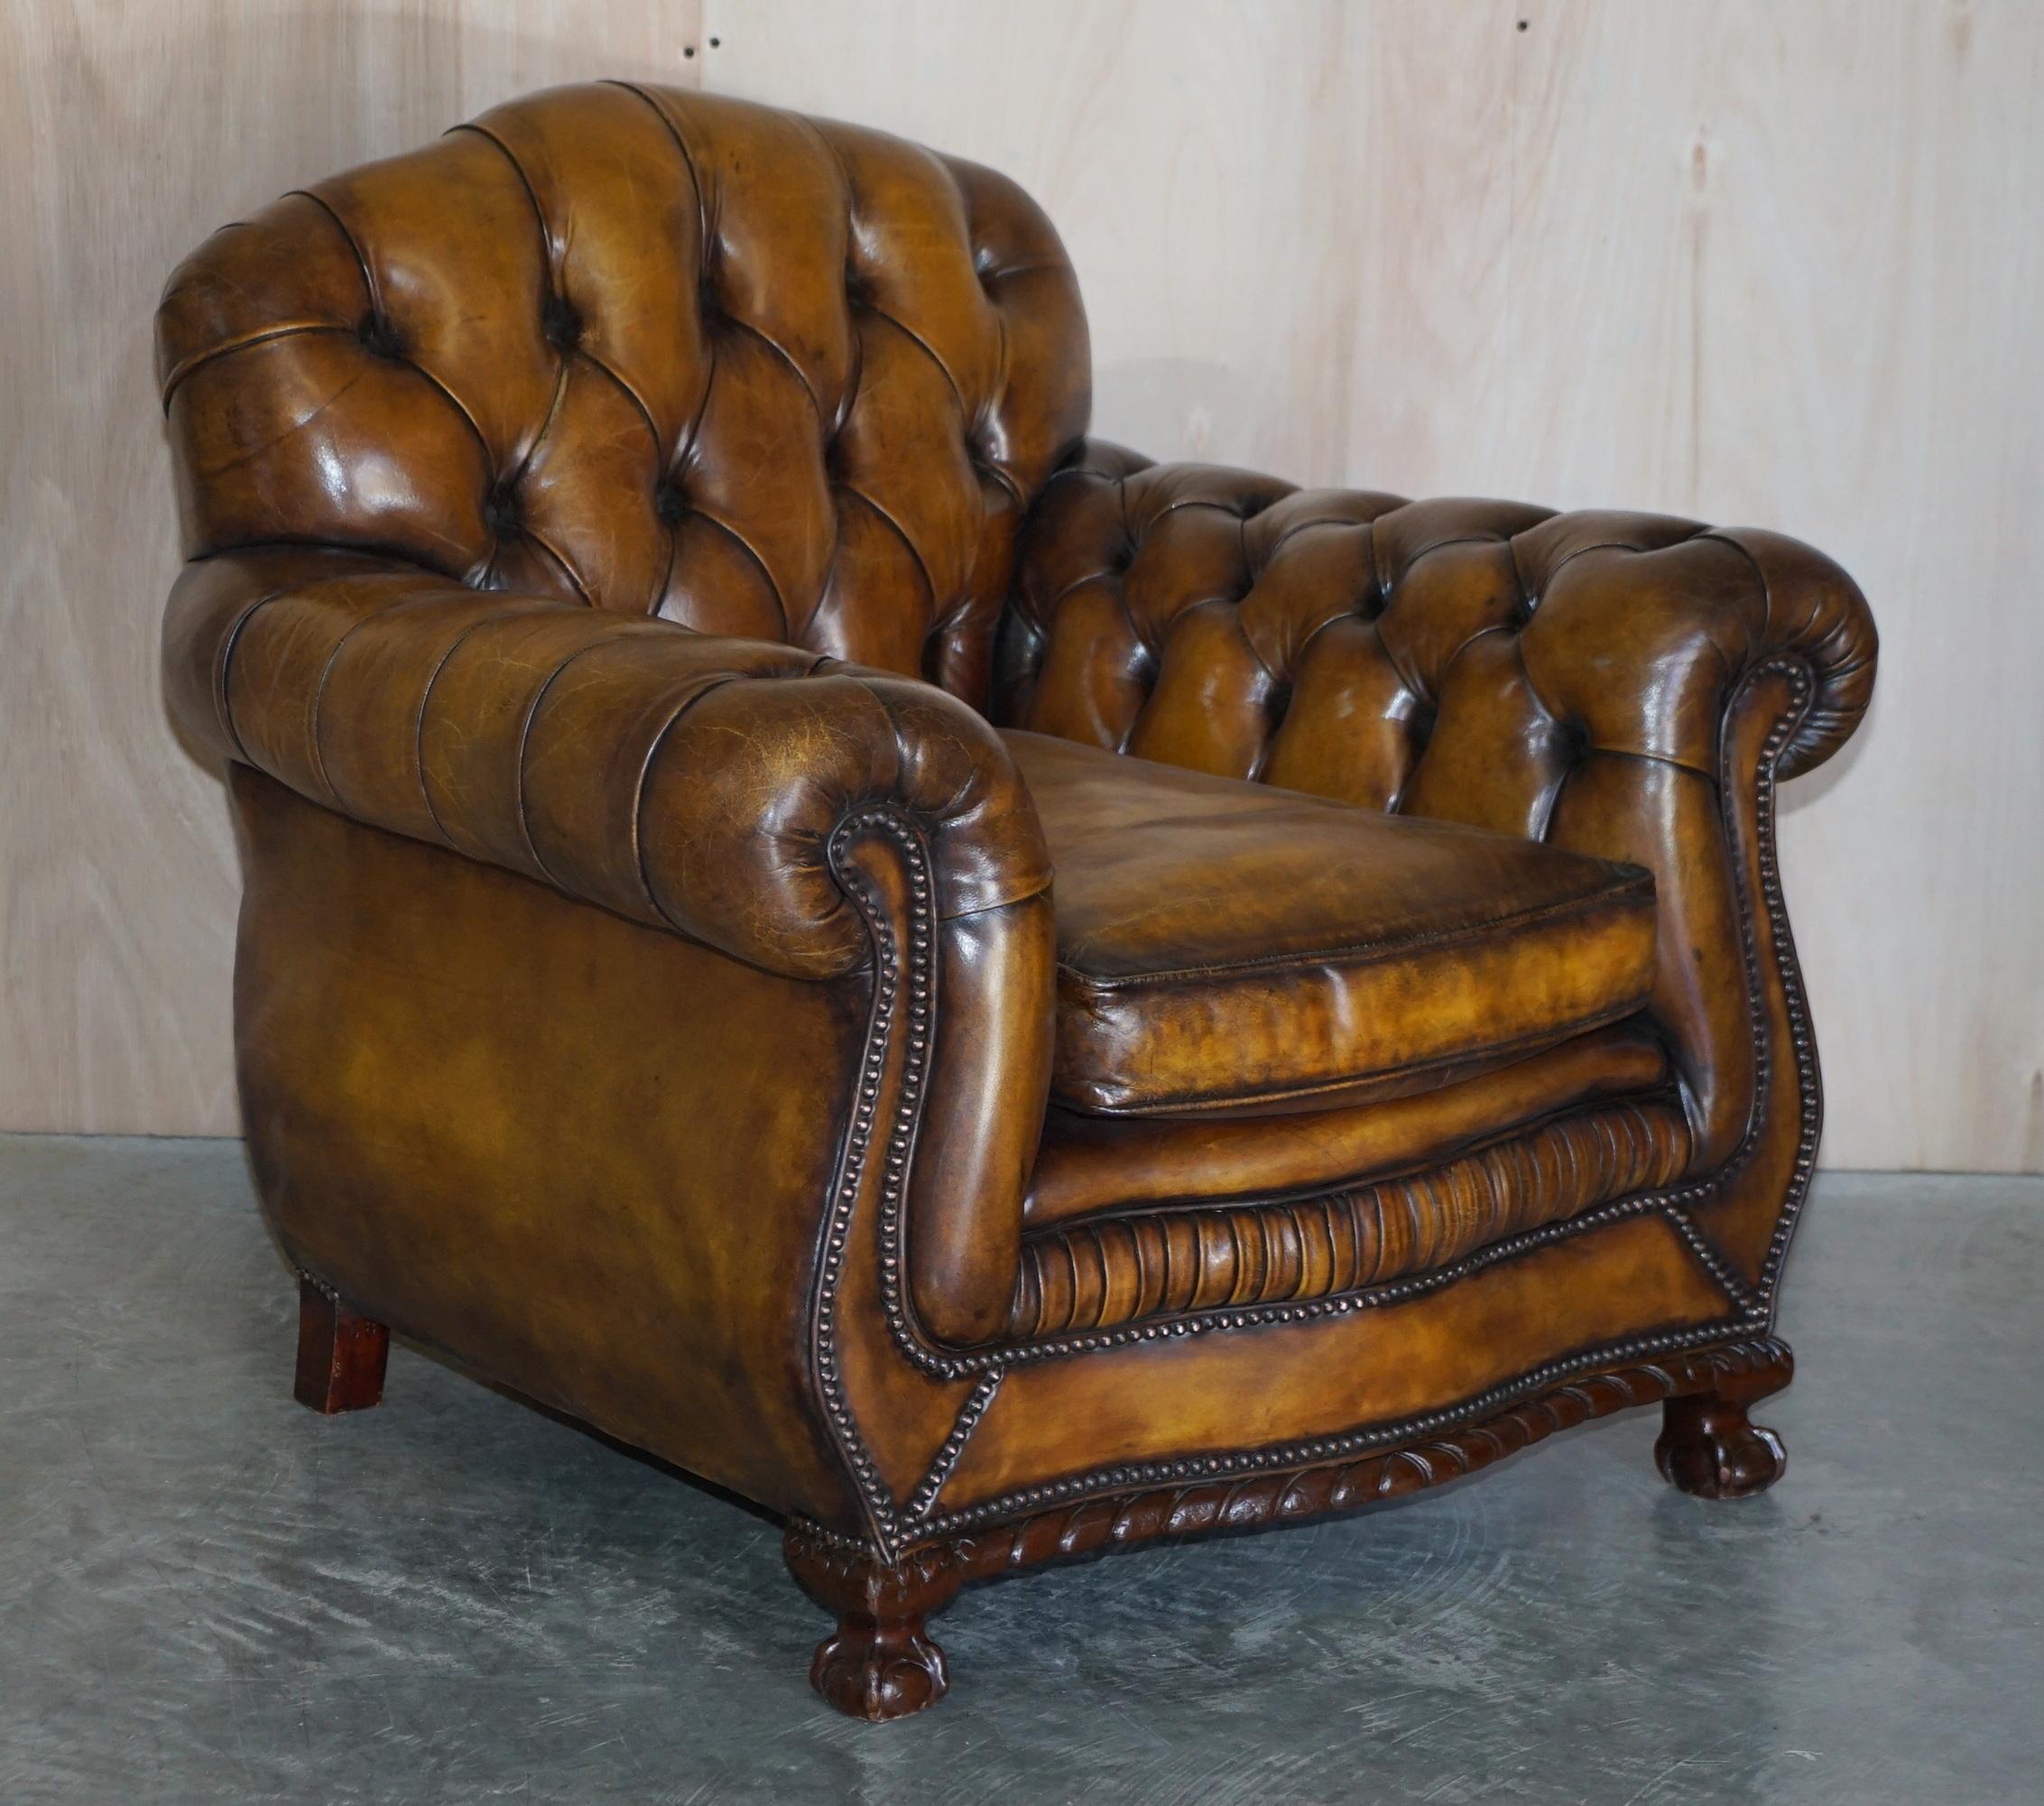 Nous sommes ravis d'offrir à la vente cette belle paire de fauteuils club Chesterfield boutonnés en cuir brun teint à la main, de style Thomas Chippendale, entièrement restaurés, avec des pieds griffes et boules.

Une paire de fauteuils décoratifs